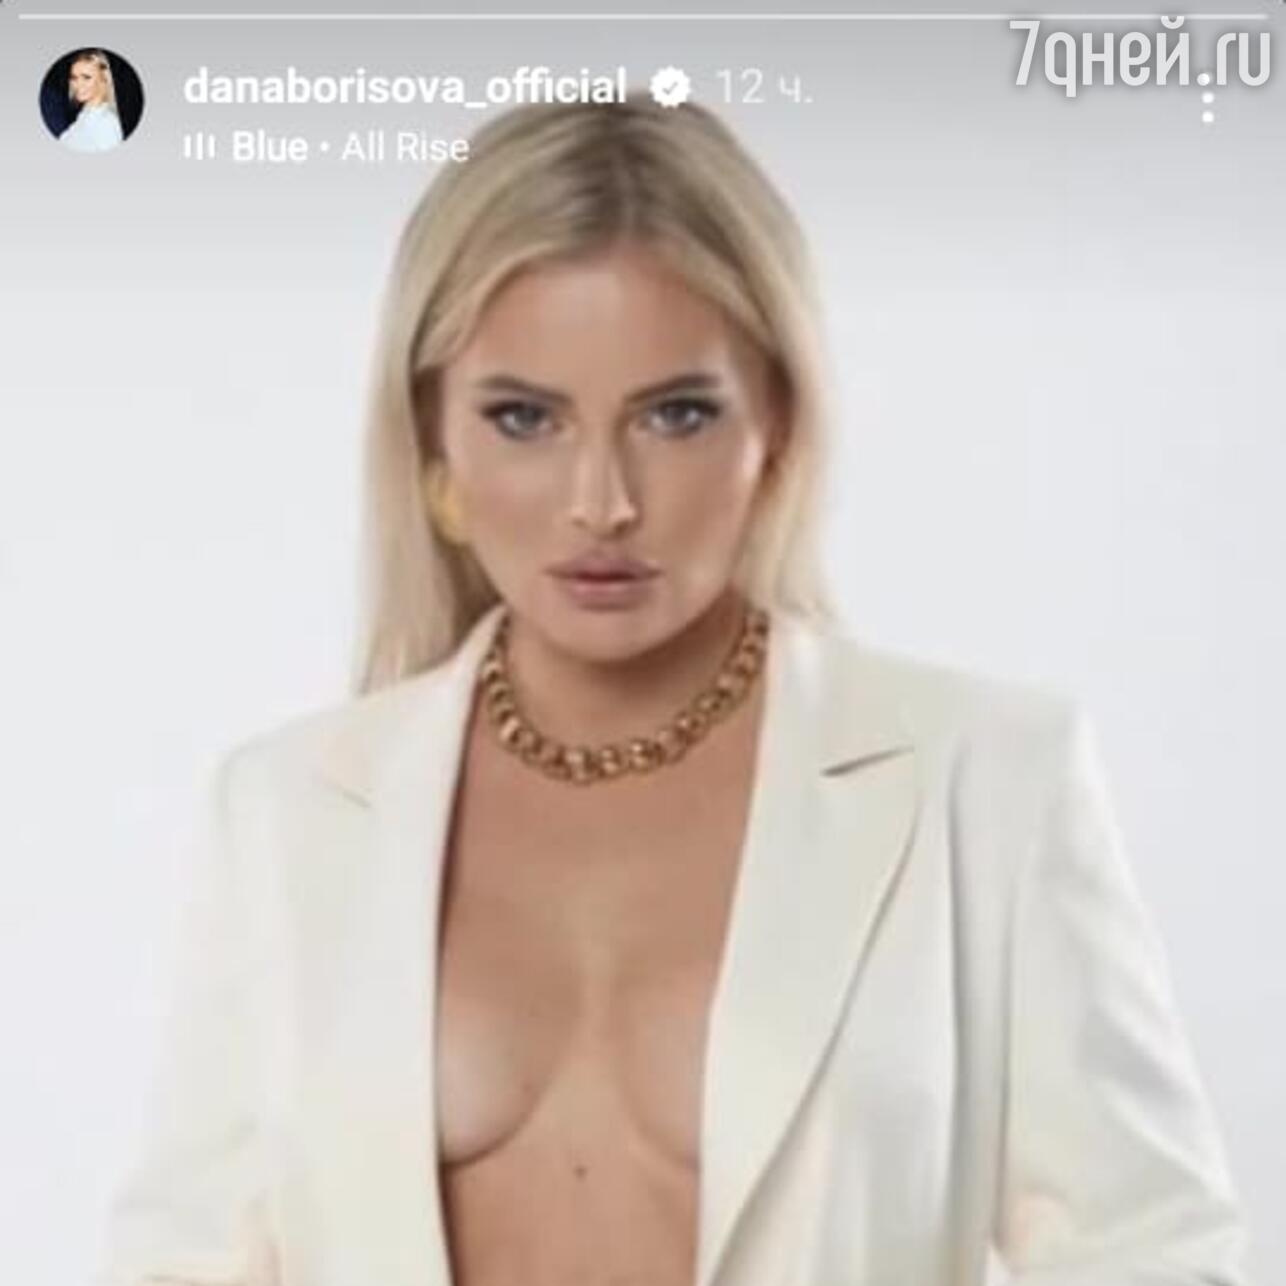 Немного невинной обнаженки»: Дана Борисова распахнула пиджак перед фанатами  - 7Дней.ру